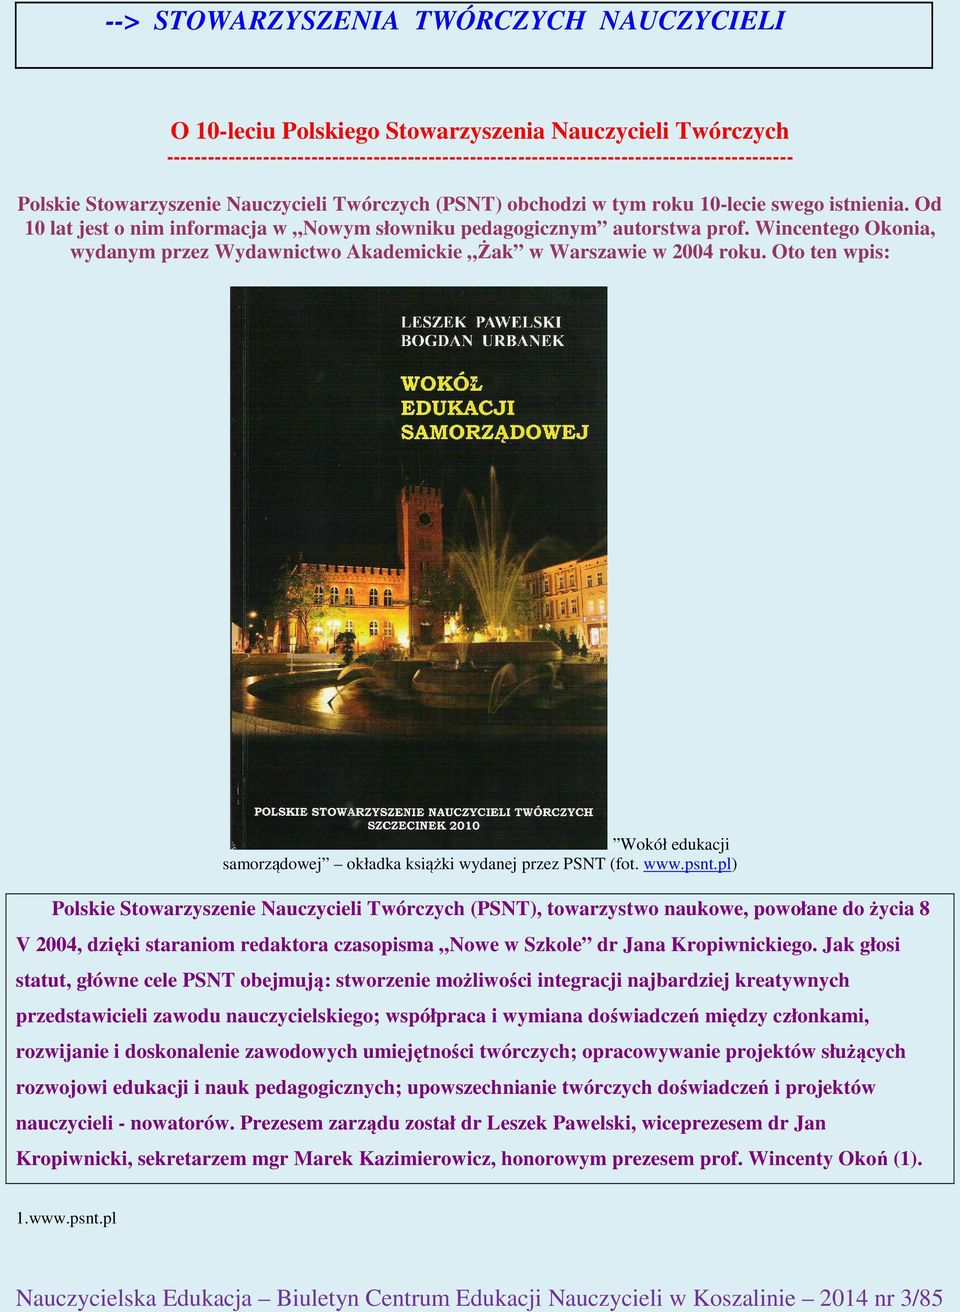 Wincentego Okonia, wydanym przez Wydawnictwo Akademickie Żak w Warszawie w 2004 roku. Oto ten wpis: Wokół edukacji samorządowej okładka książki wydanej przez PSNT (fot. www.psnt.